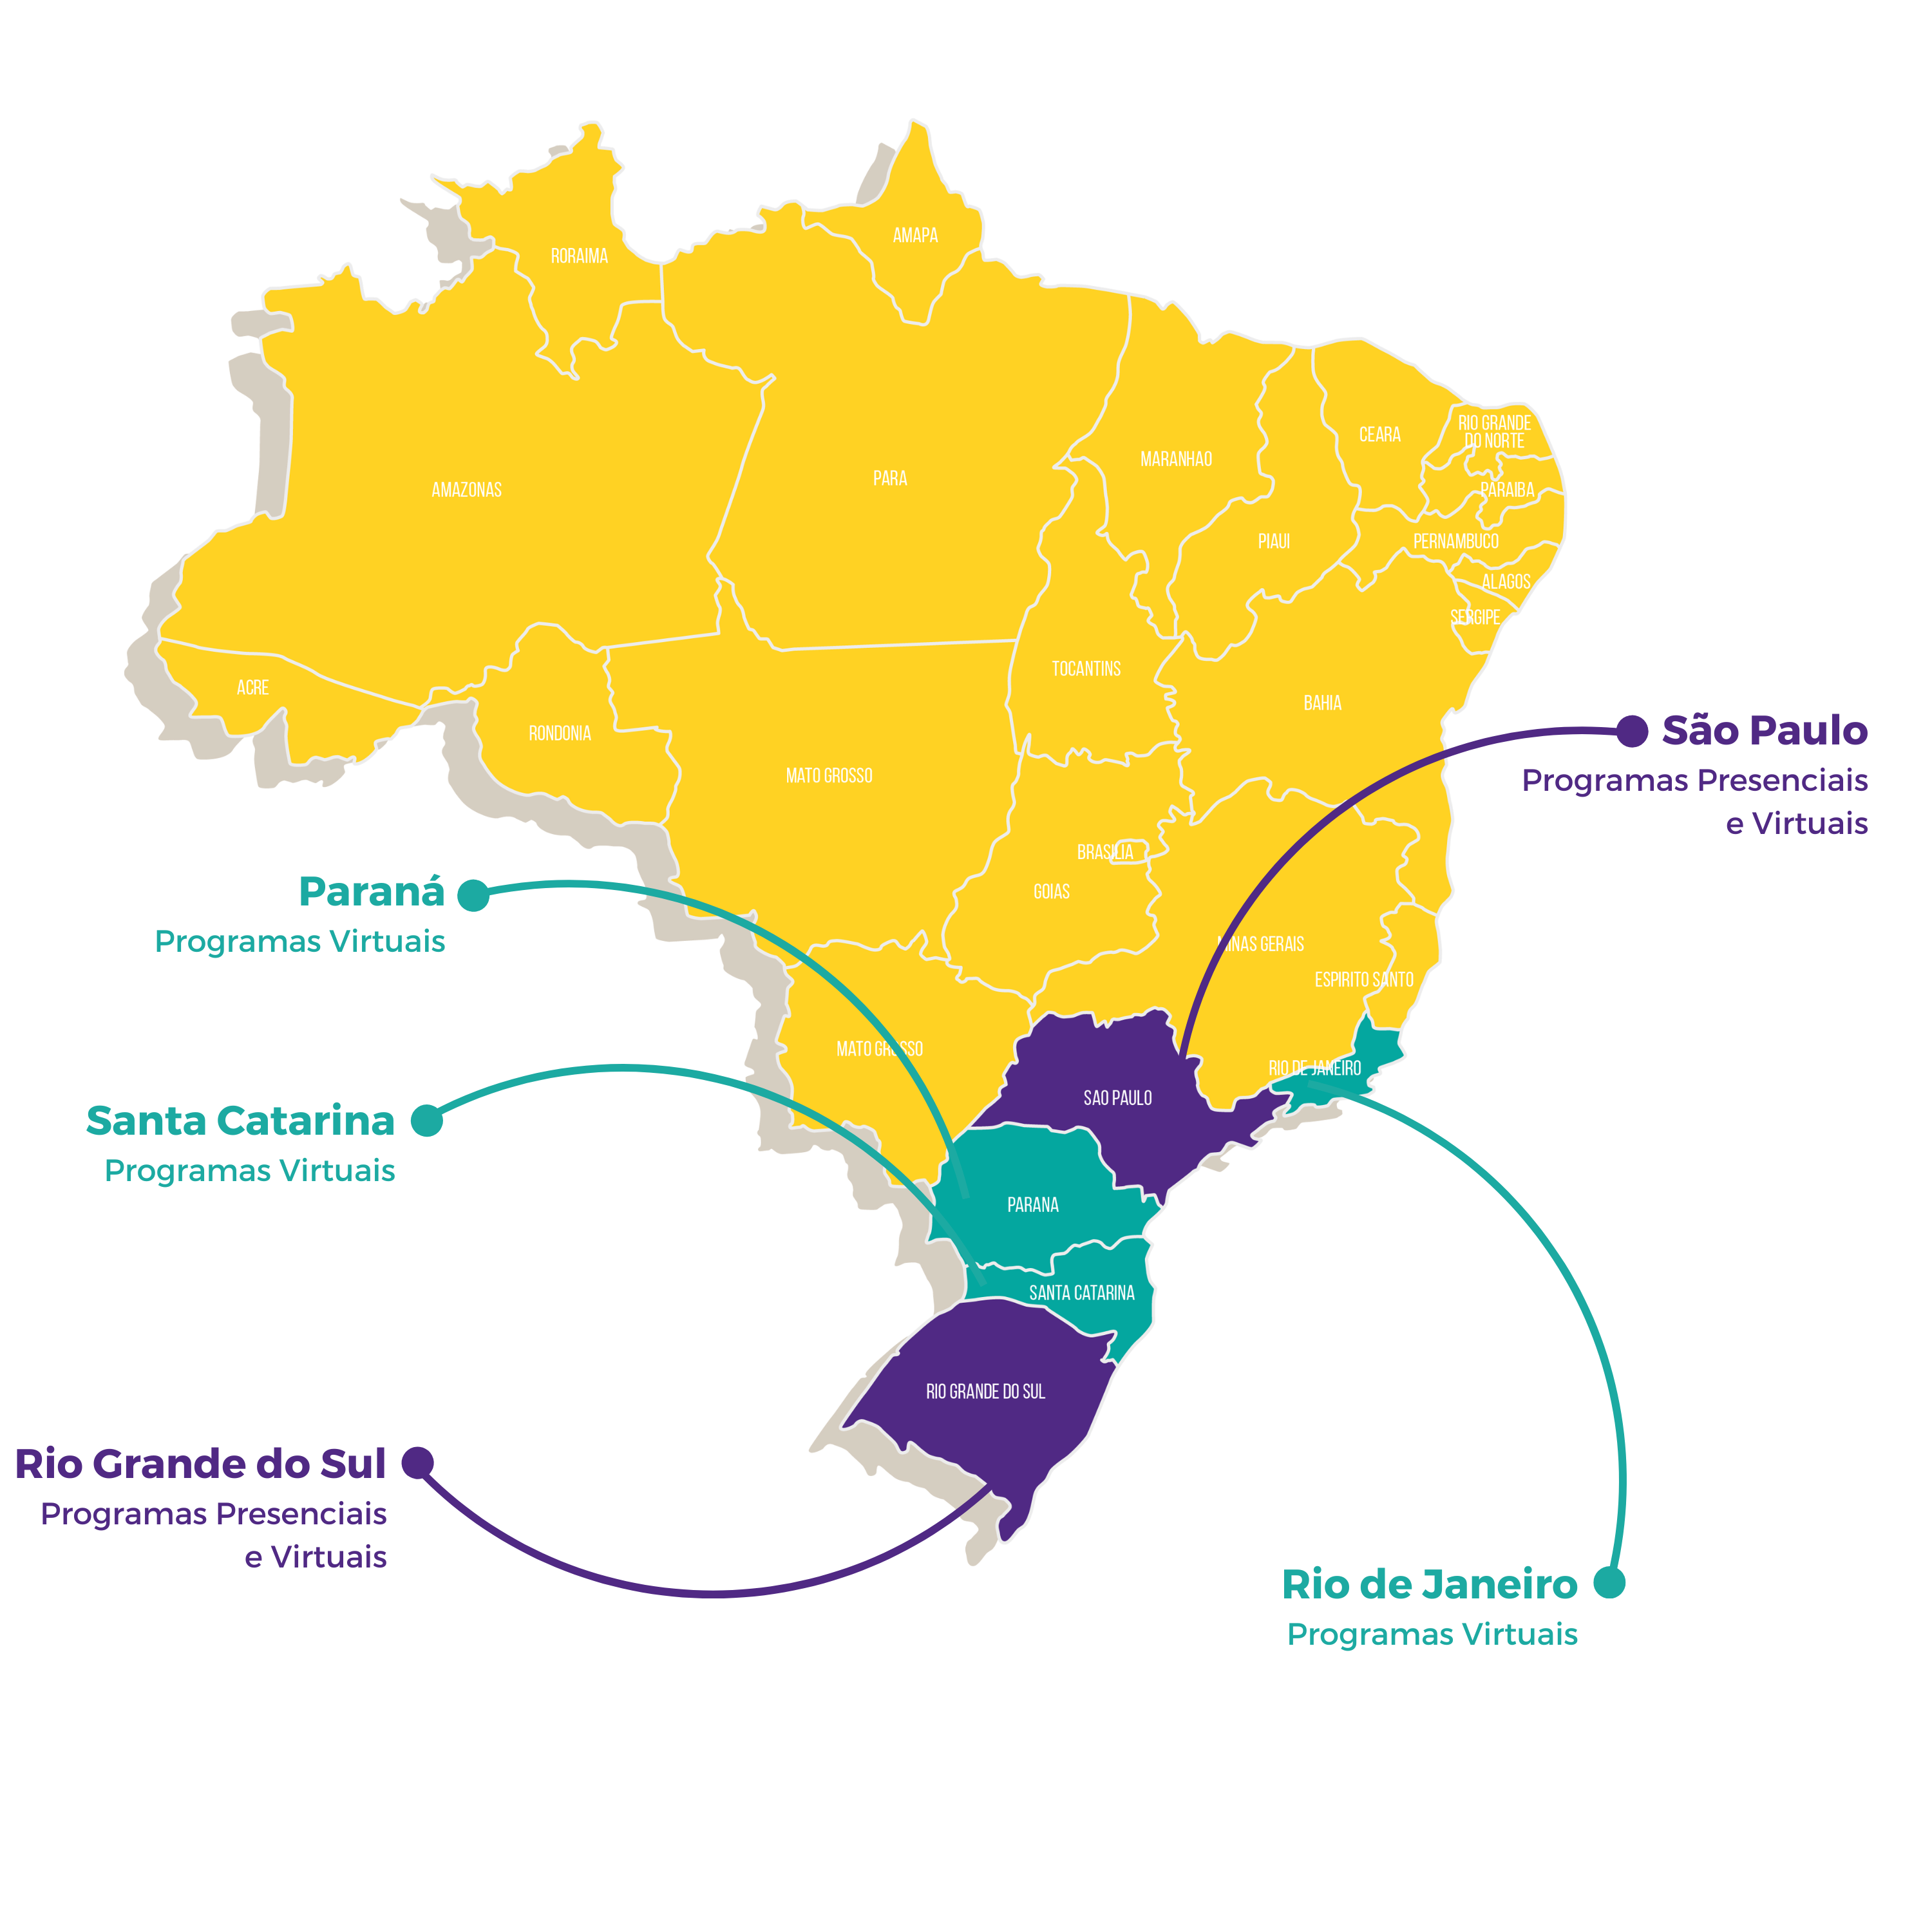 Mapa do Brasil com a expansão da ONG nos vários estados.